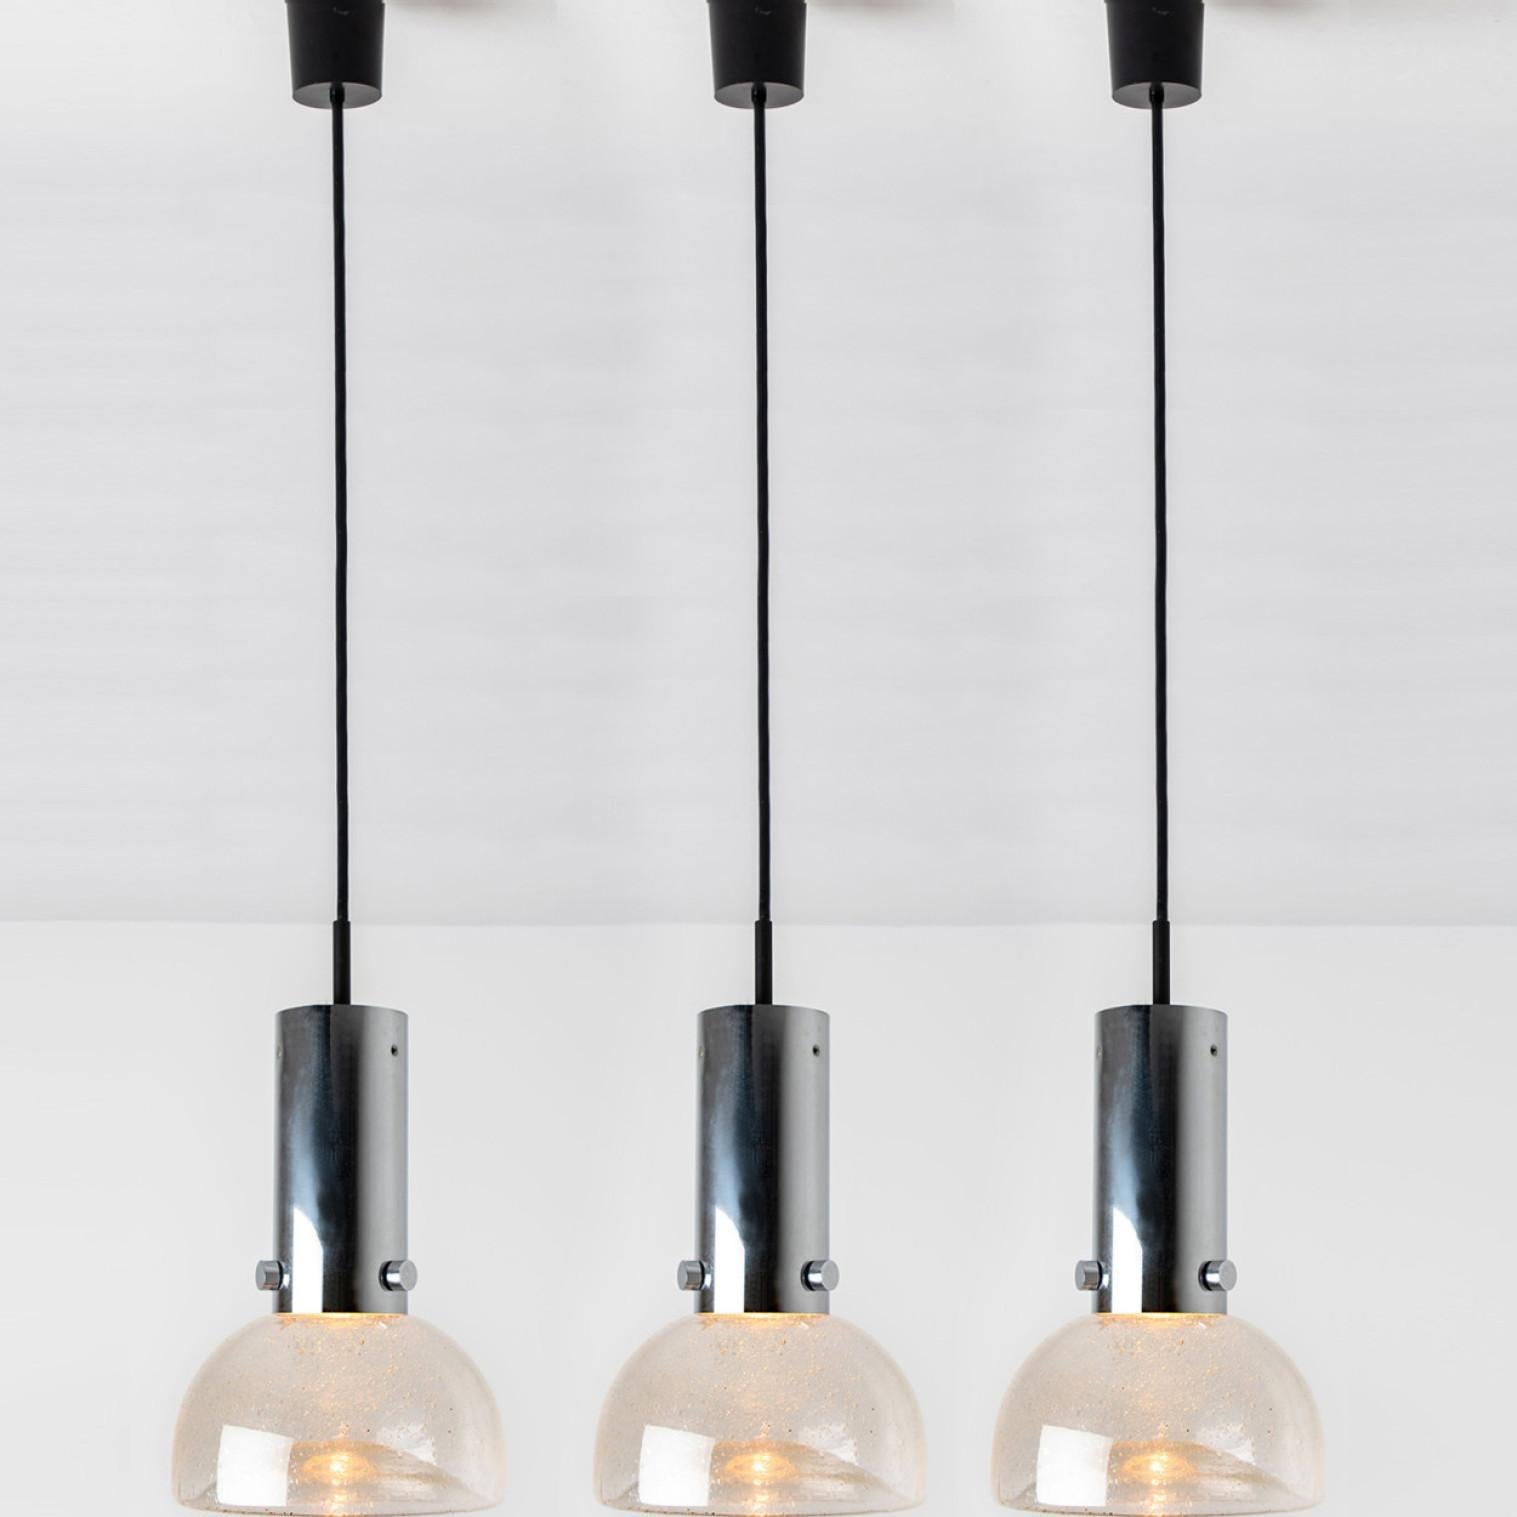 Eine der drei Original-Röhrenleuchten aus den 1970er Jahren, hergestellt von Staff Leuchten, Deutschland.
Hochwertige Glasleuchten mit mundgeblasenen Schirmen an einer verchromten Hängeleuchte. Alles original.
Dieser Artikel ist in ausgezeichnetem